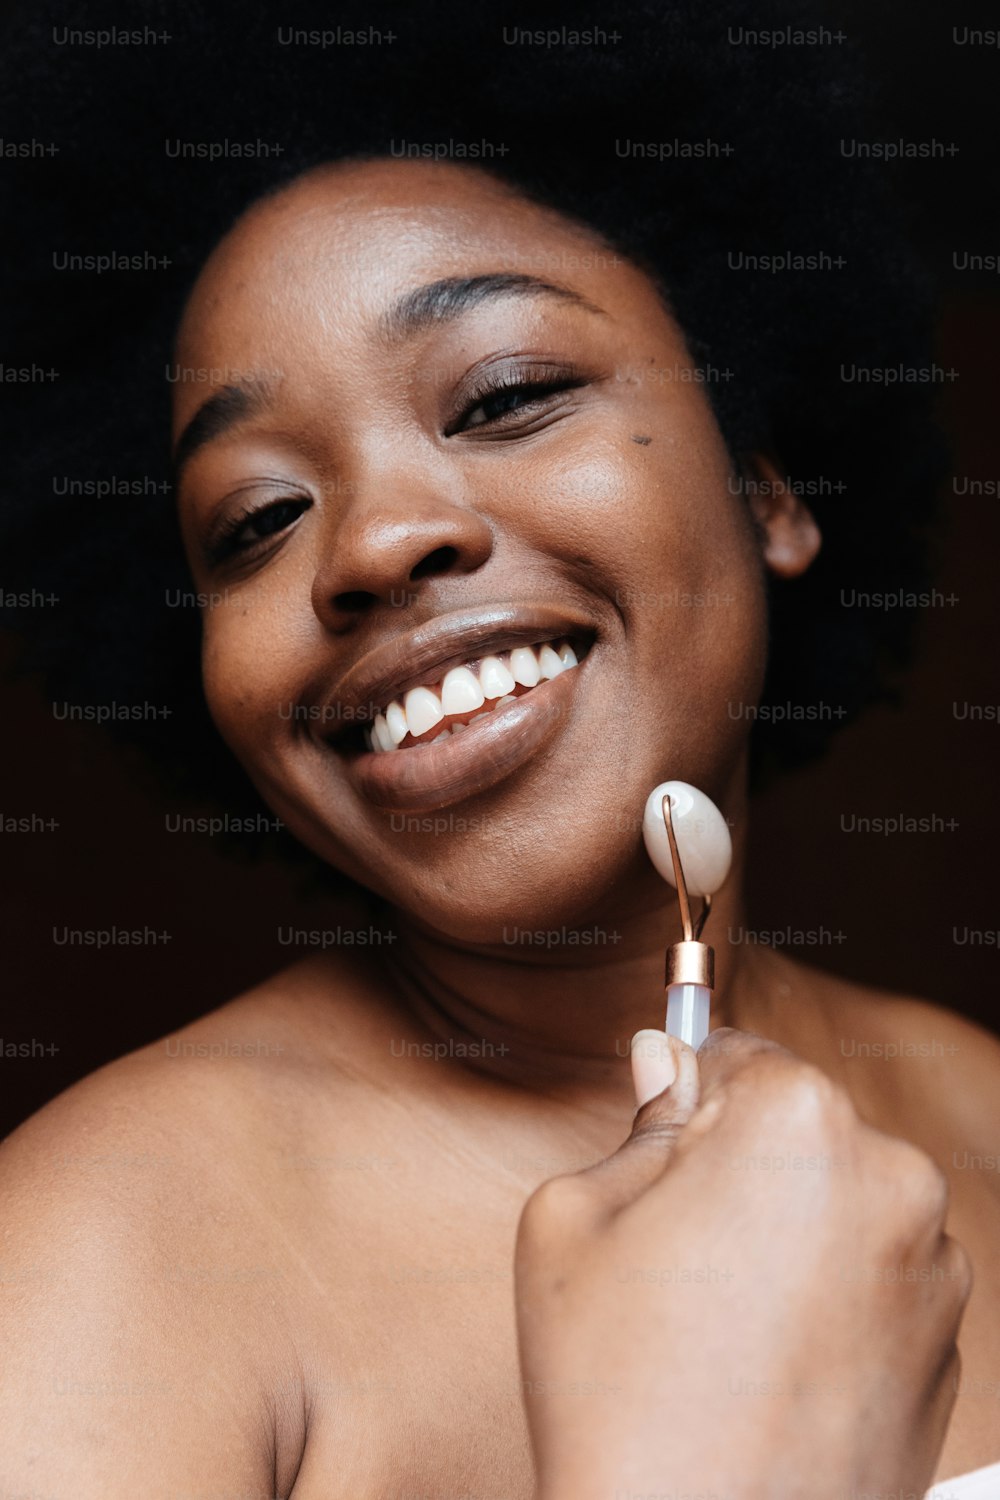 Une femme sourit tout en tenant une brosse à dents